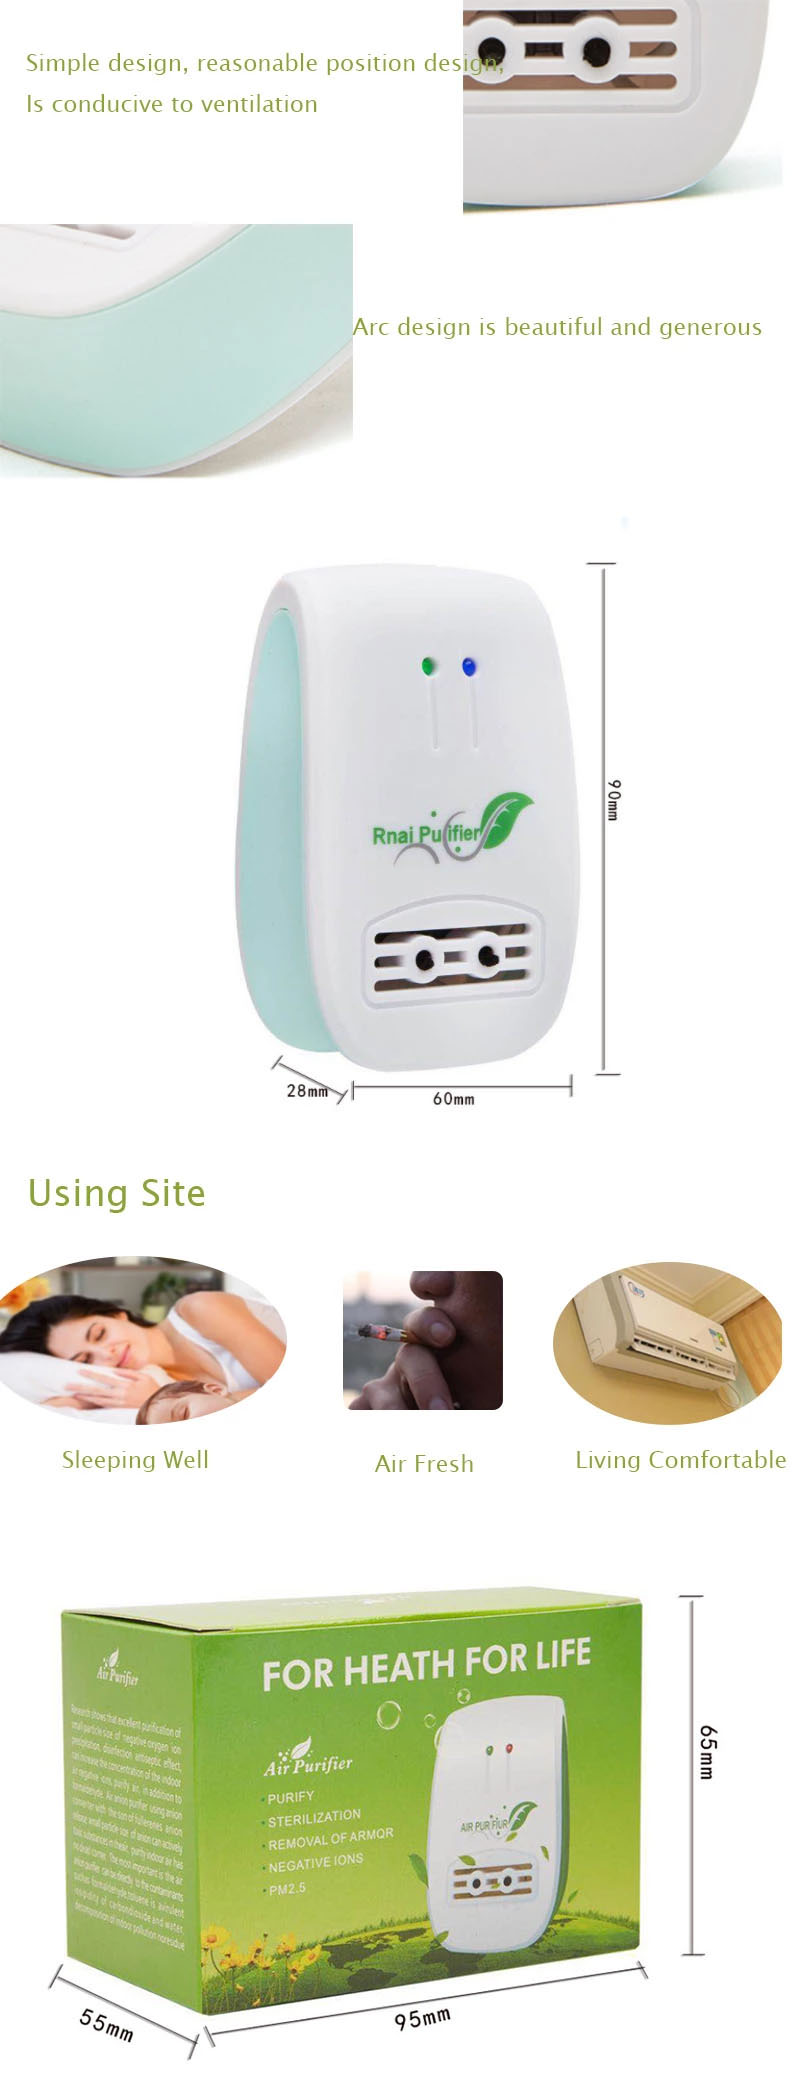 ម៉ាស៊ីនសម្អាតខ្យល់ Revitalizer Portable Home Air Purifier Anion Ozone Air Purifier with Filter for Office Hospital3